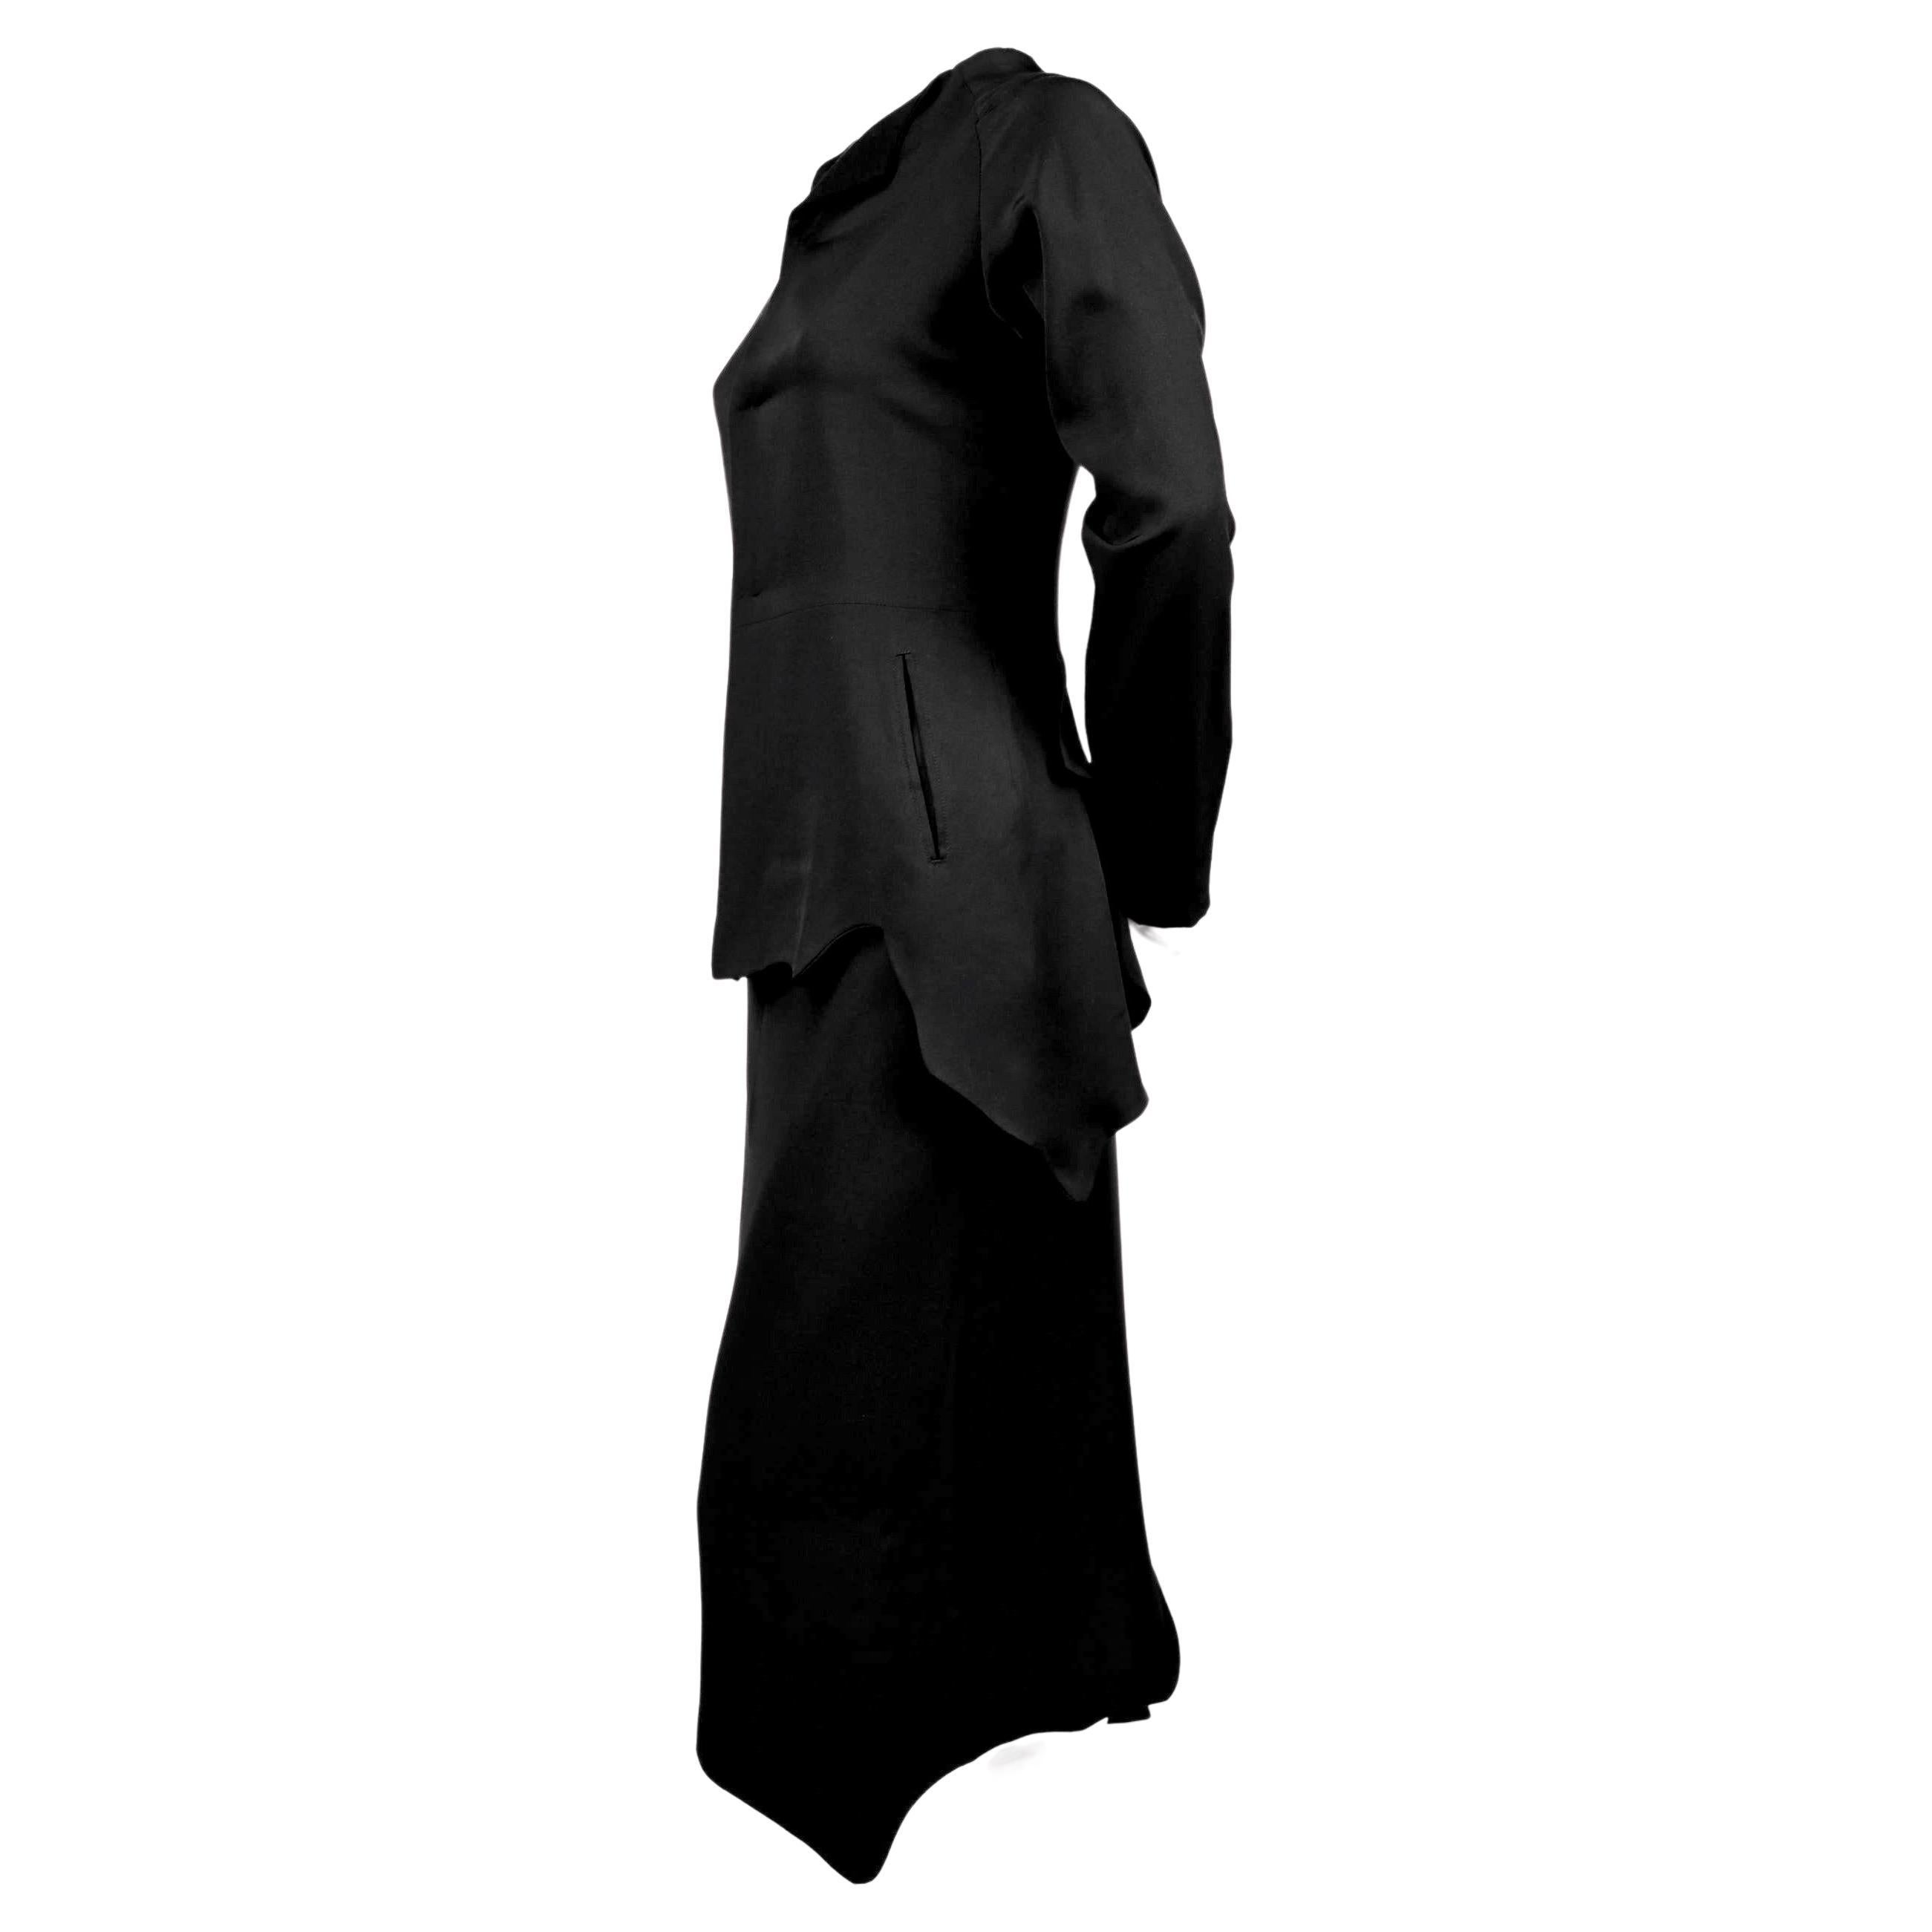 Veste et jupe asymétriques en soie noir de jais de Yohji Yamamoto, telles qu'elles ont été présentées lors du défilé de l'automne 2000. Taille 